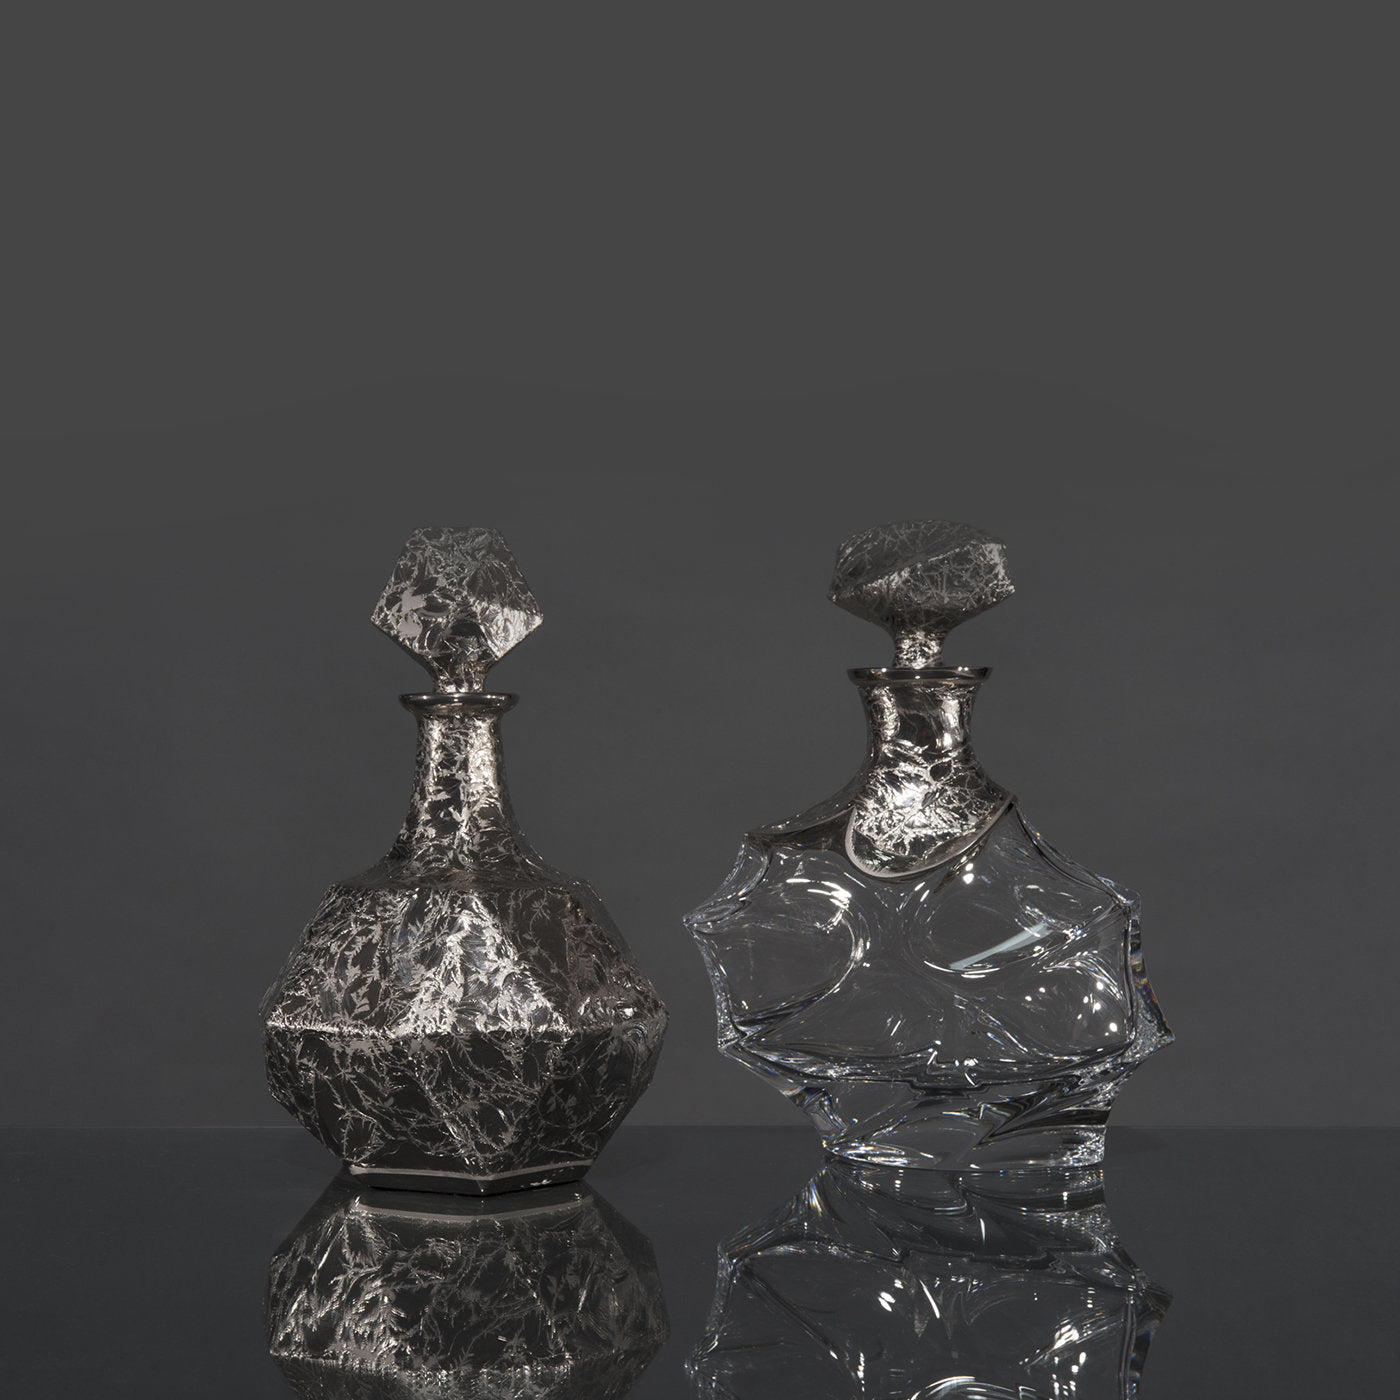 Capriccio Onda Transparent and Platinum Bottle - Alternative view 1